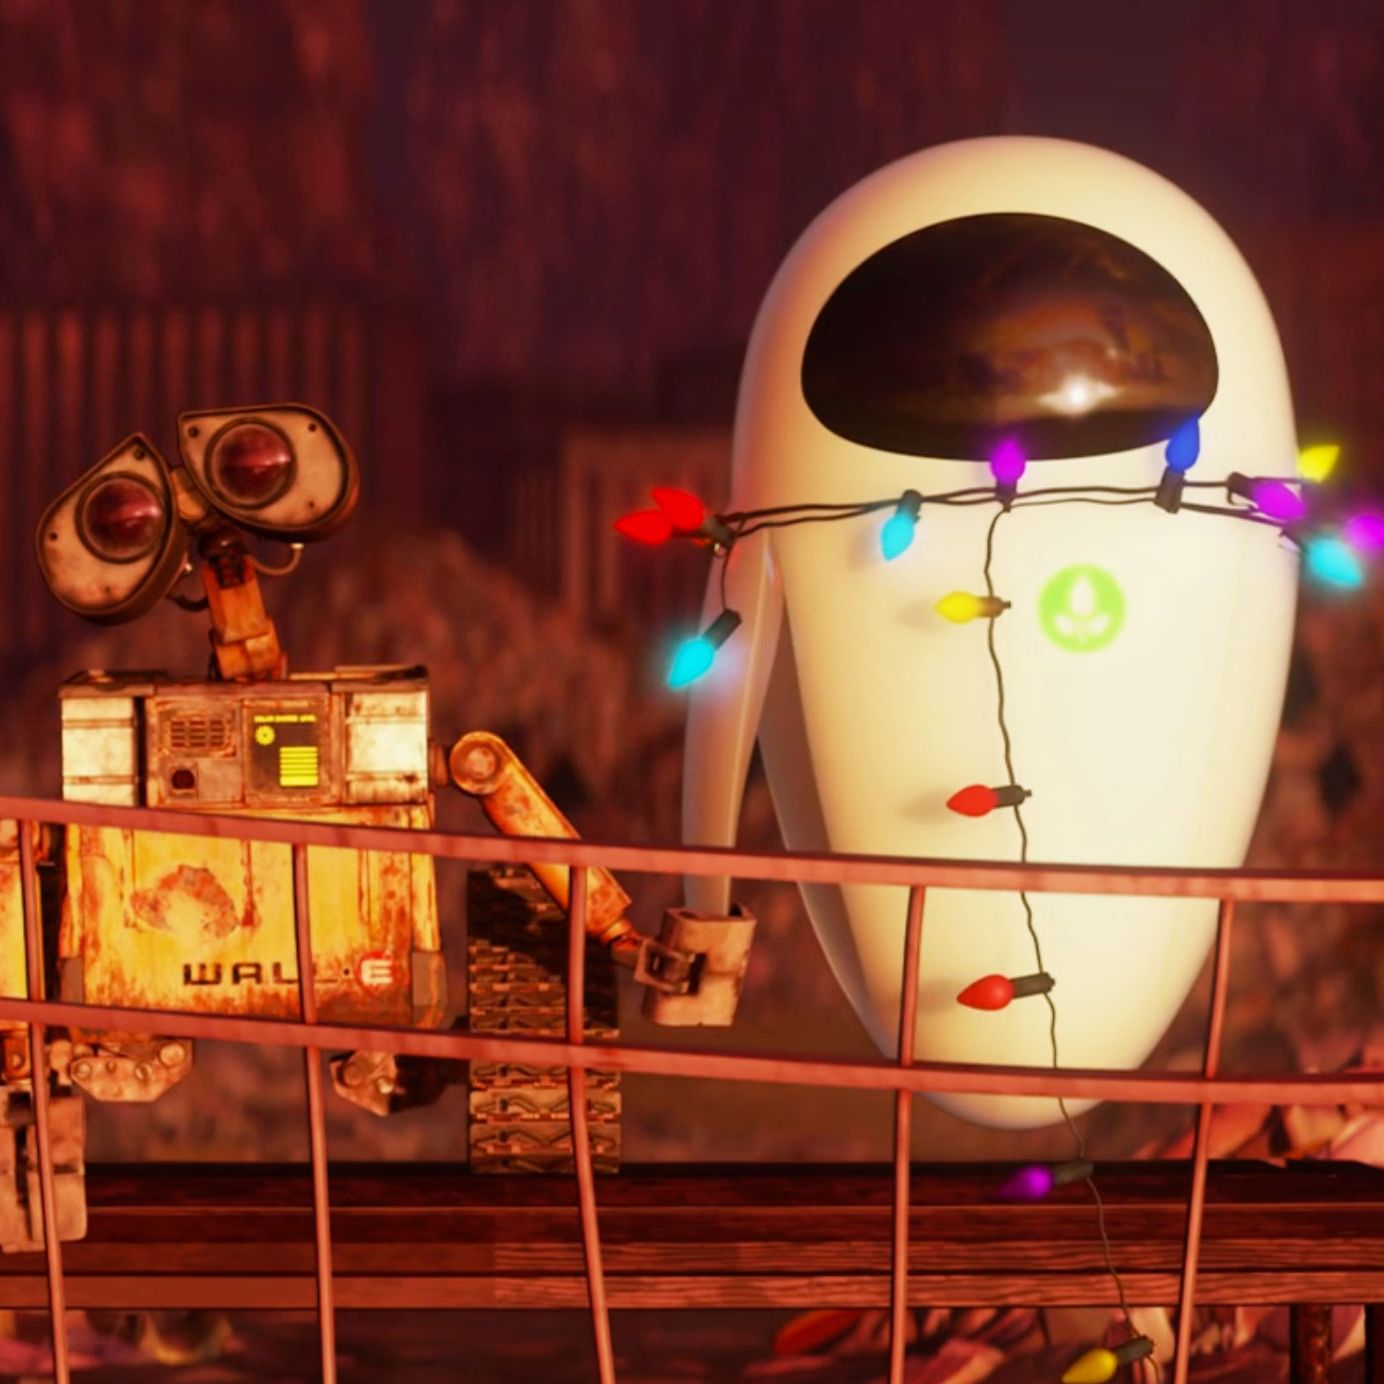 WALL-E 2 (2025), Pixar Animation